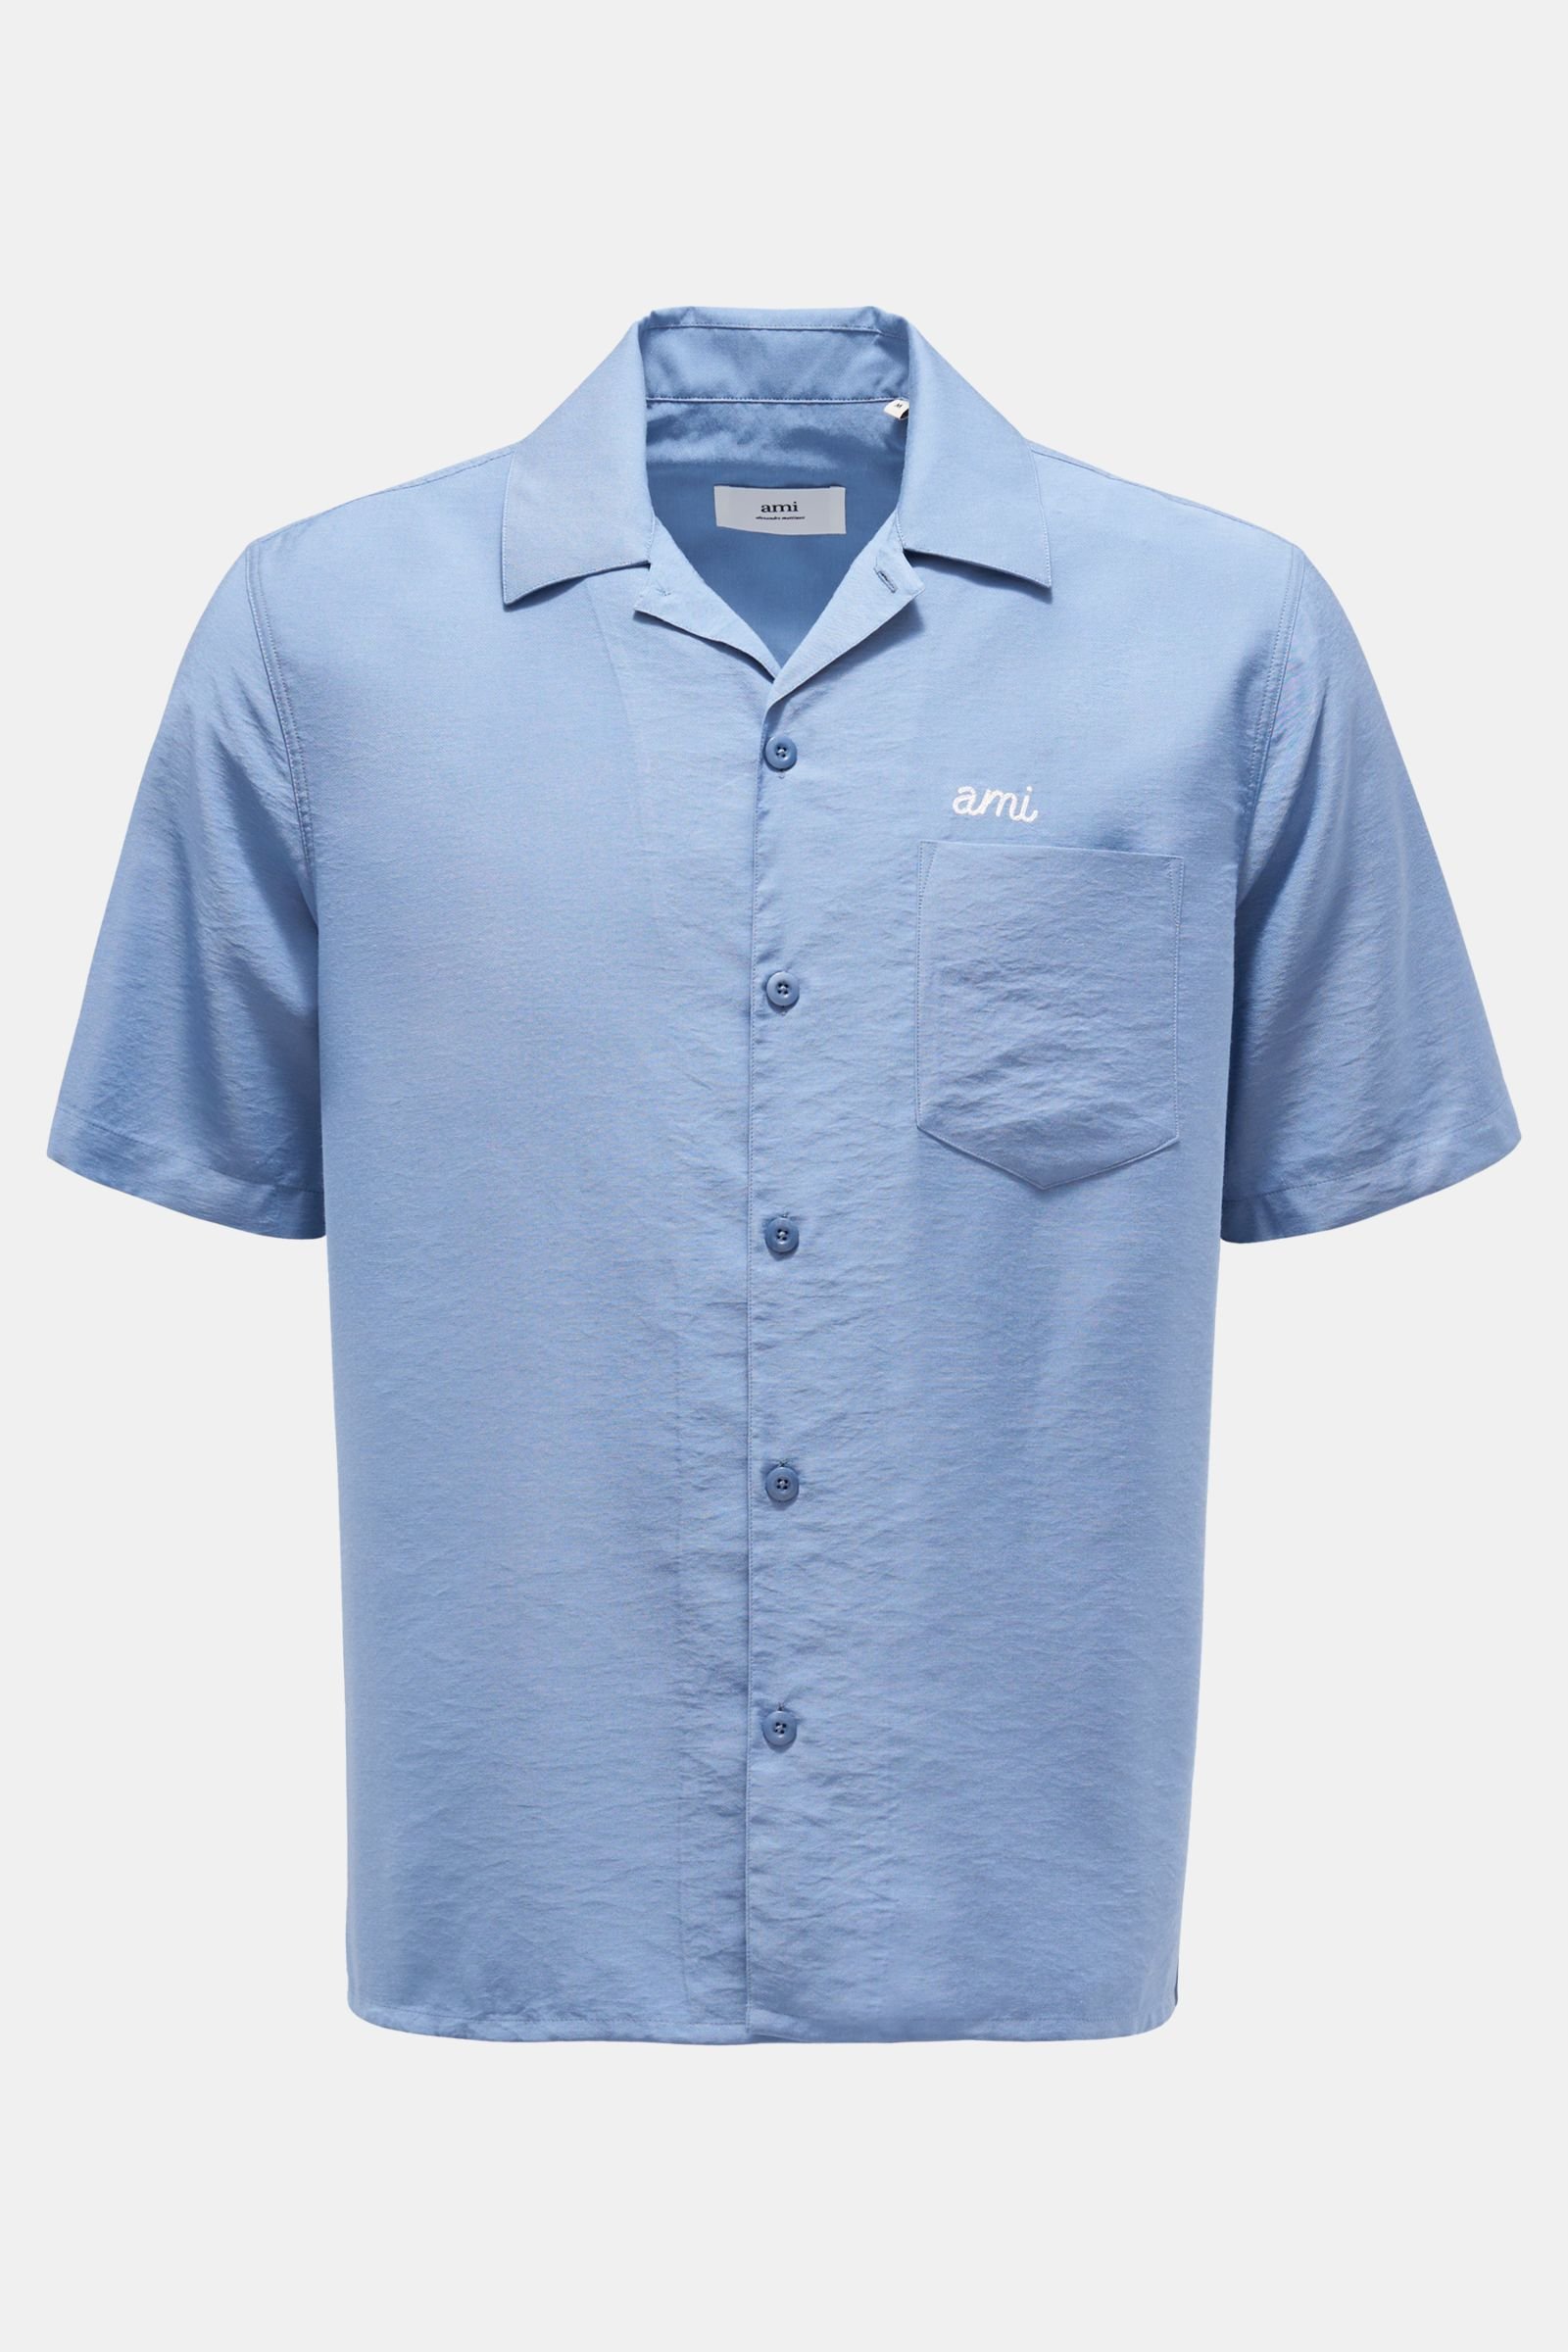 Short sleeve shirt Cuban collar light blue